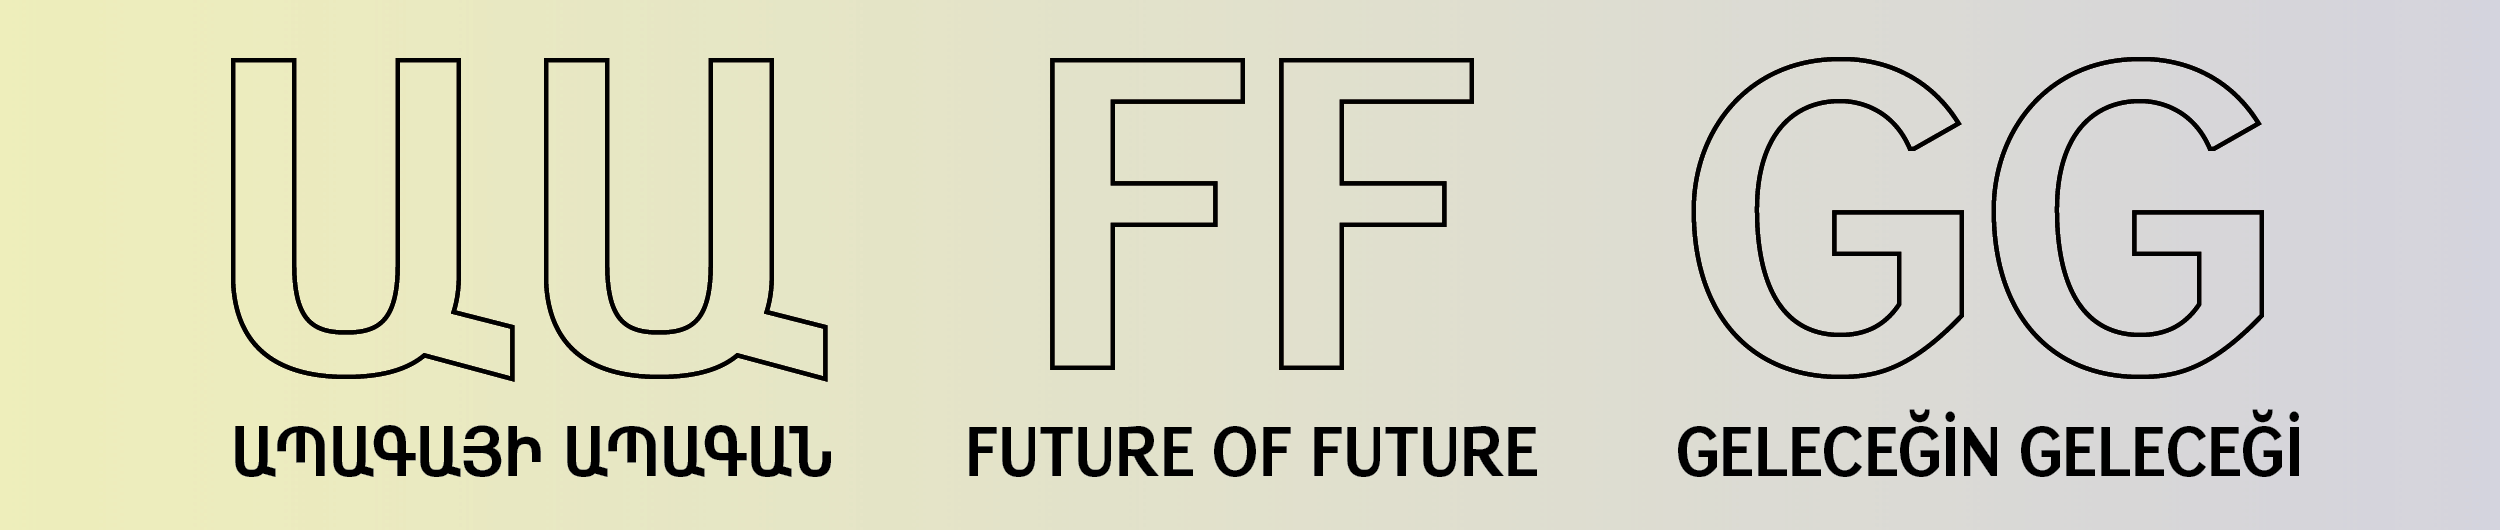 Ապագայի Ապագան /  The Future of Future / Geleceğin Geleceği